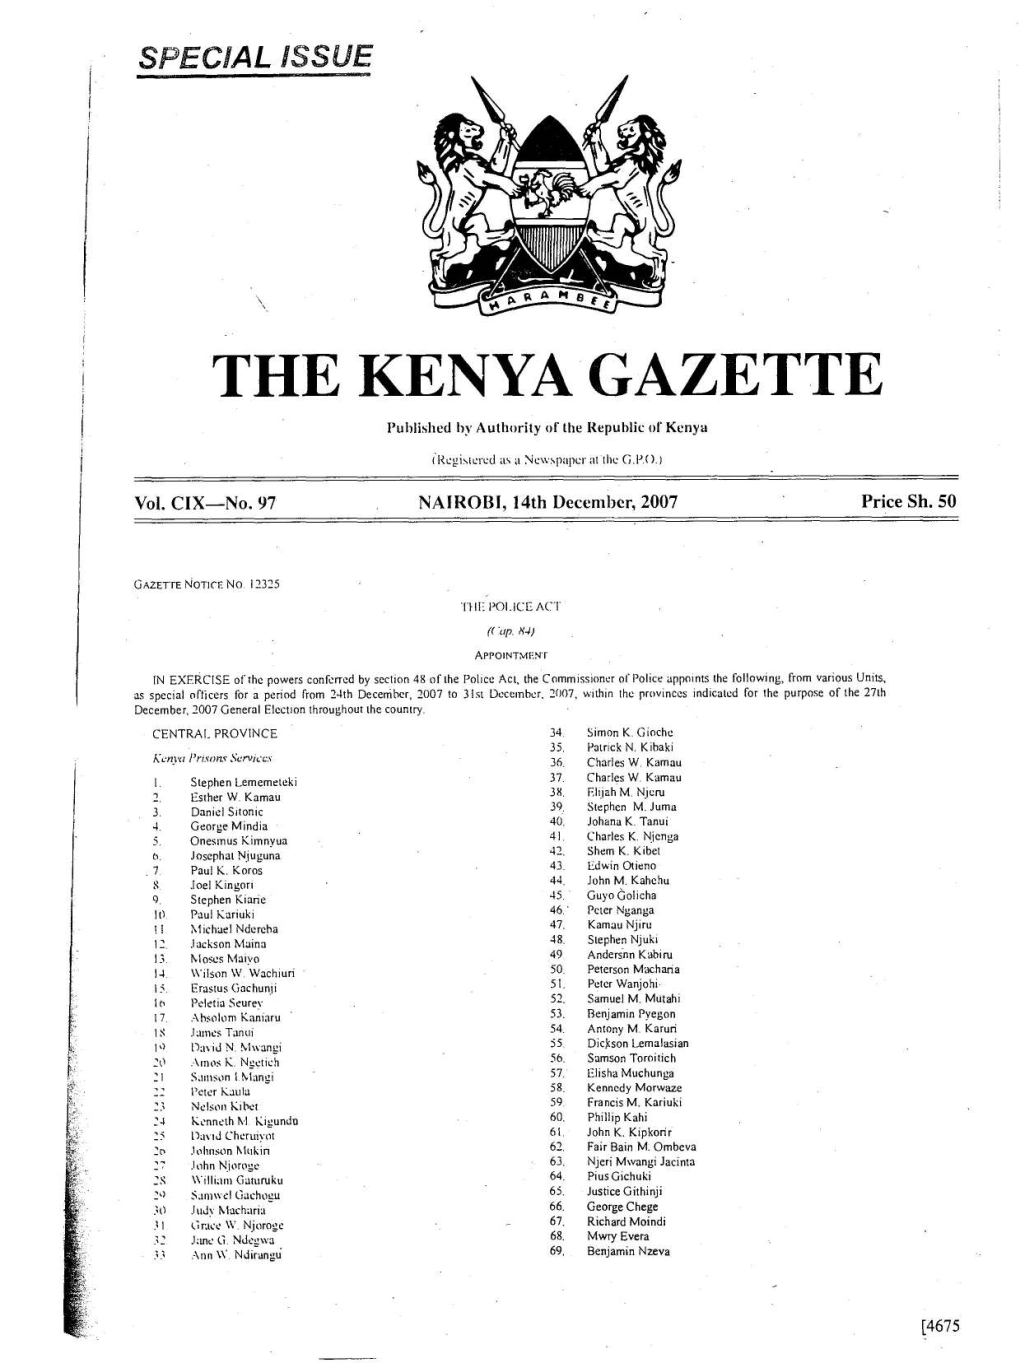 The Kenya Gazette 4677